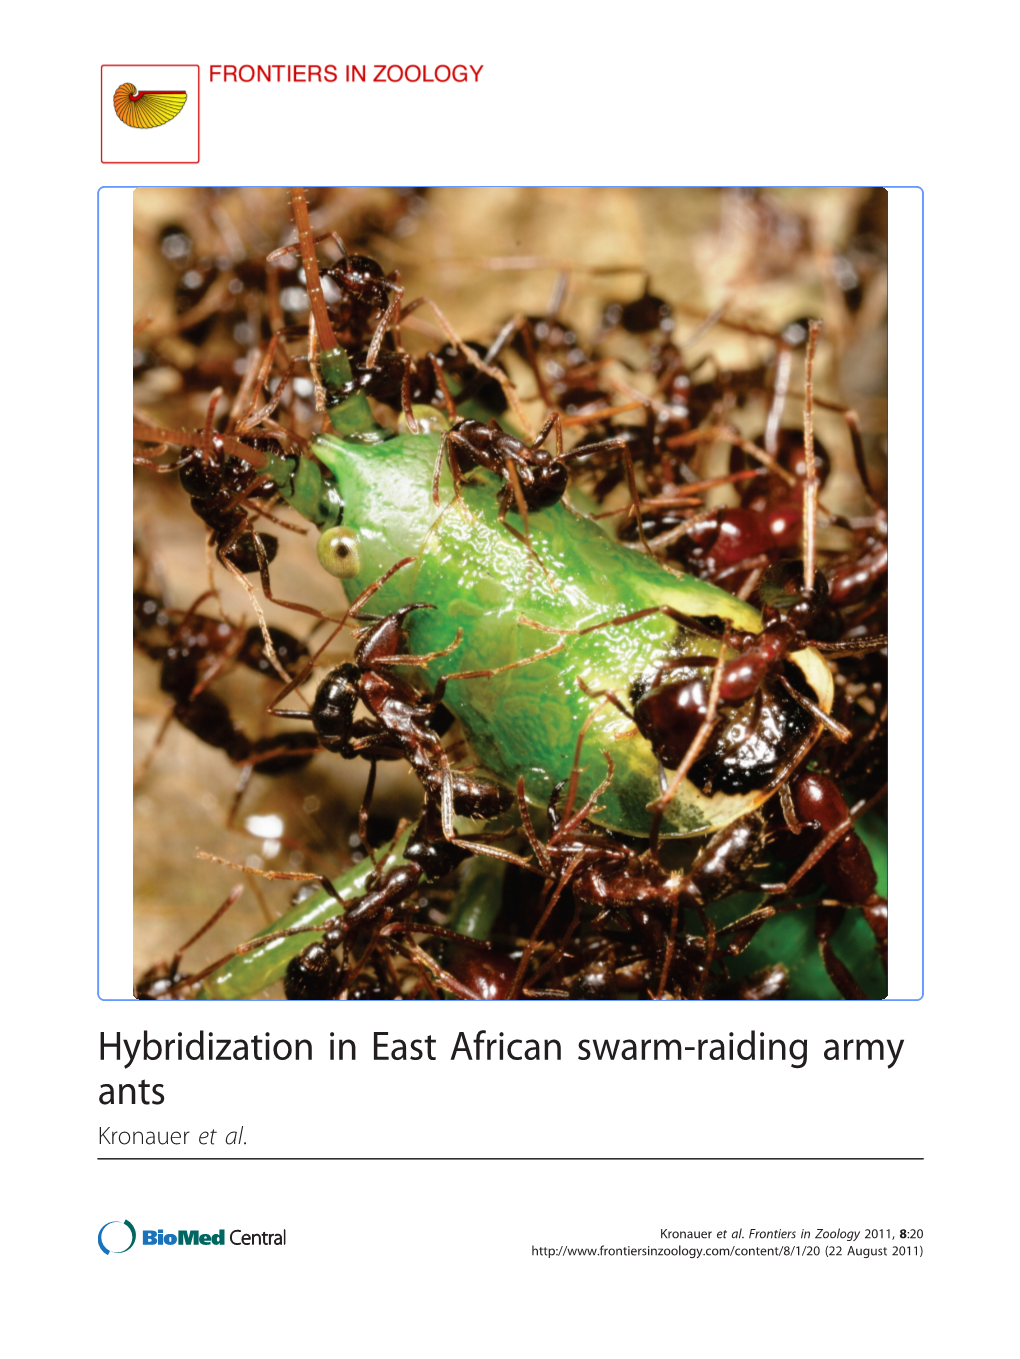 Hybridization in East African Swarm-Raiding Army Ants Kronauer Et Al